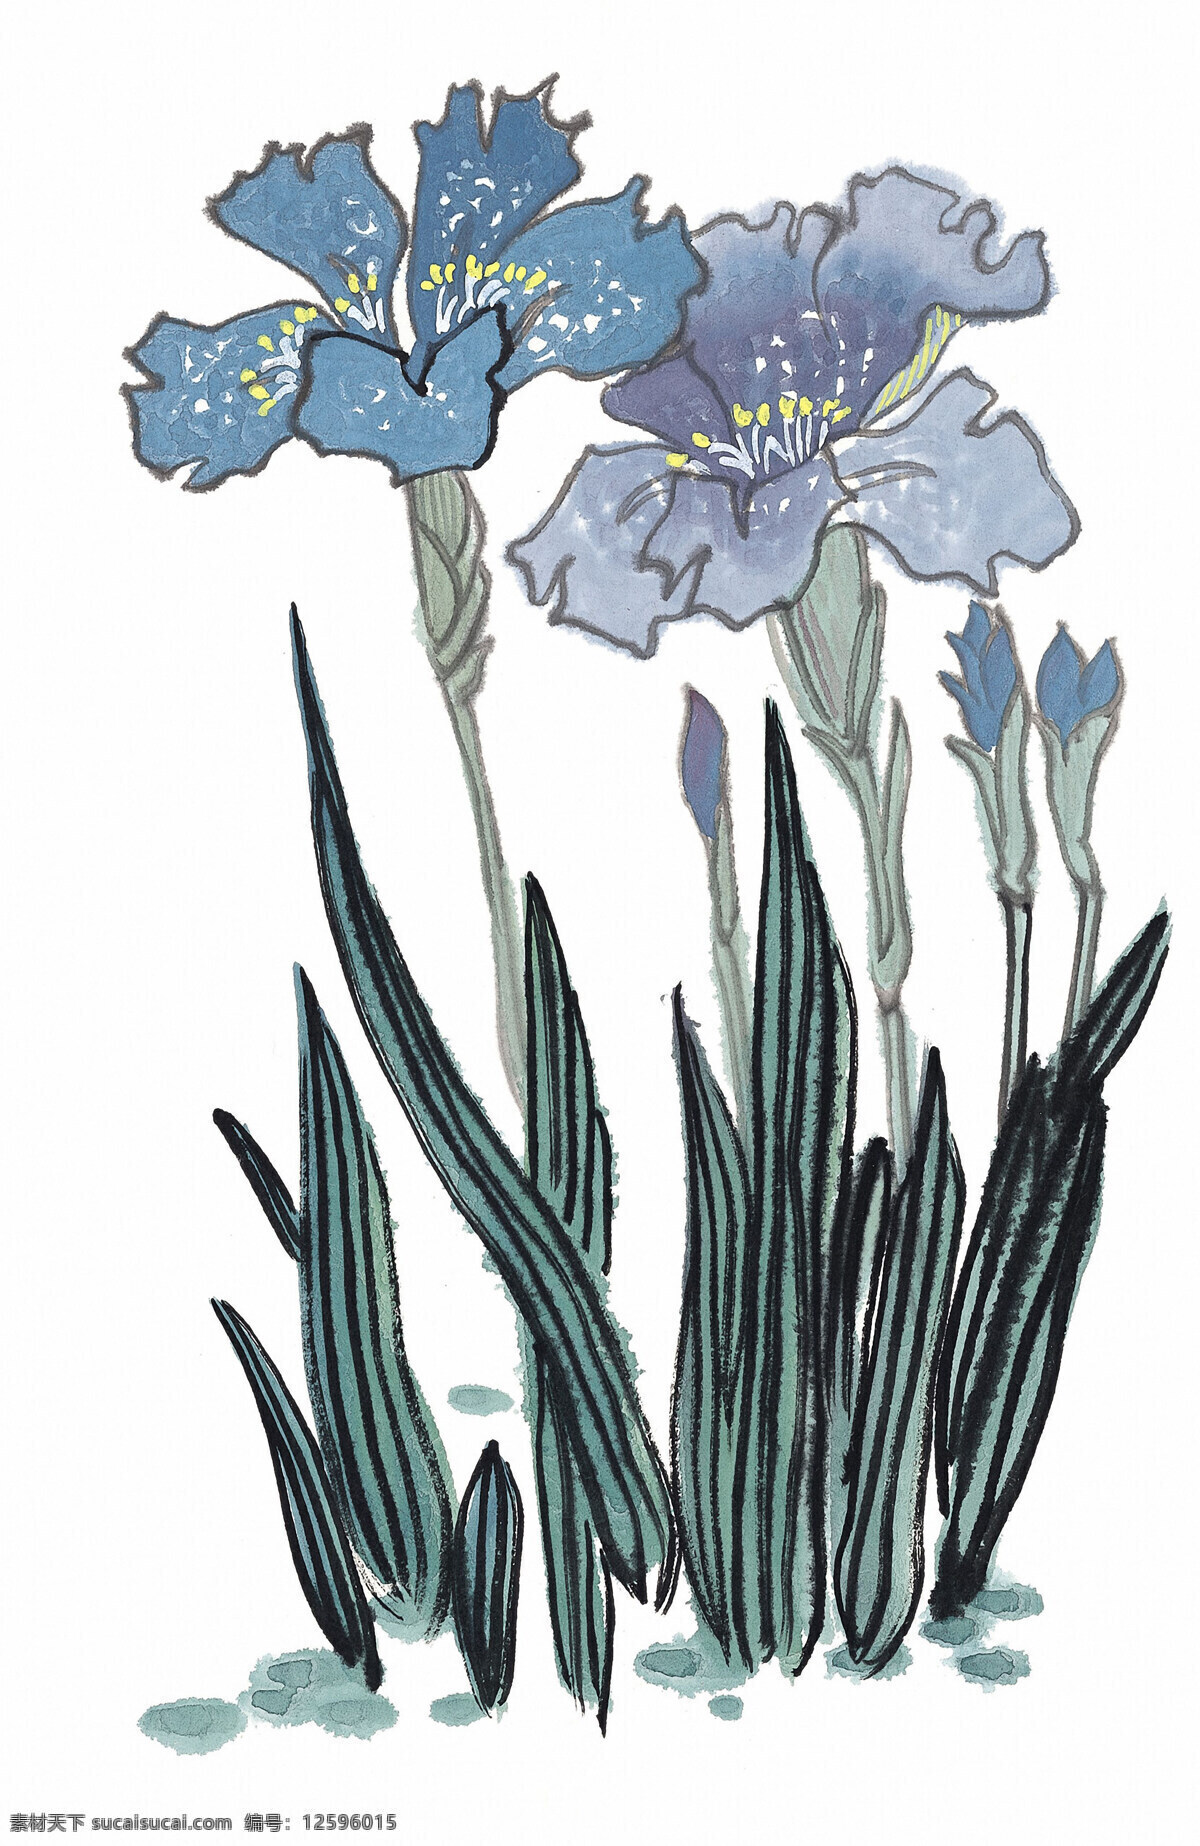 蓝色 水仙 水墨画 分层 国画 水墨风格 水墨风景 中国山水画 装饰画 水墨 植物 文化艺术